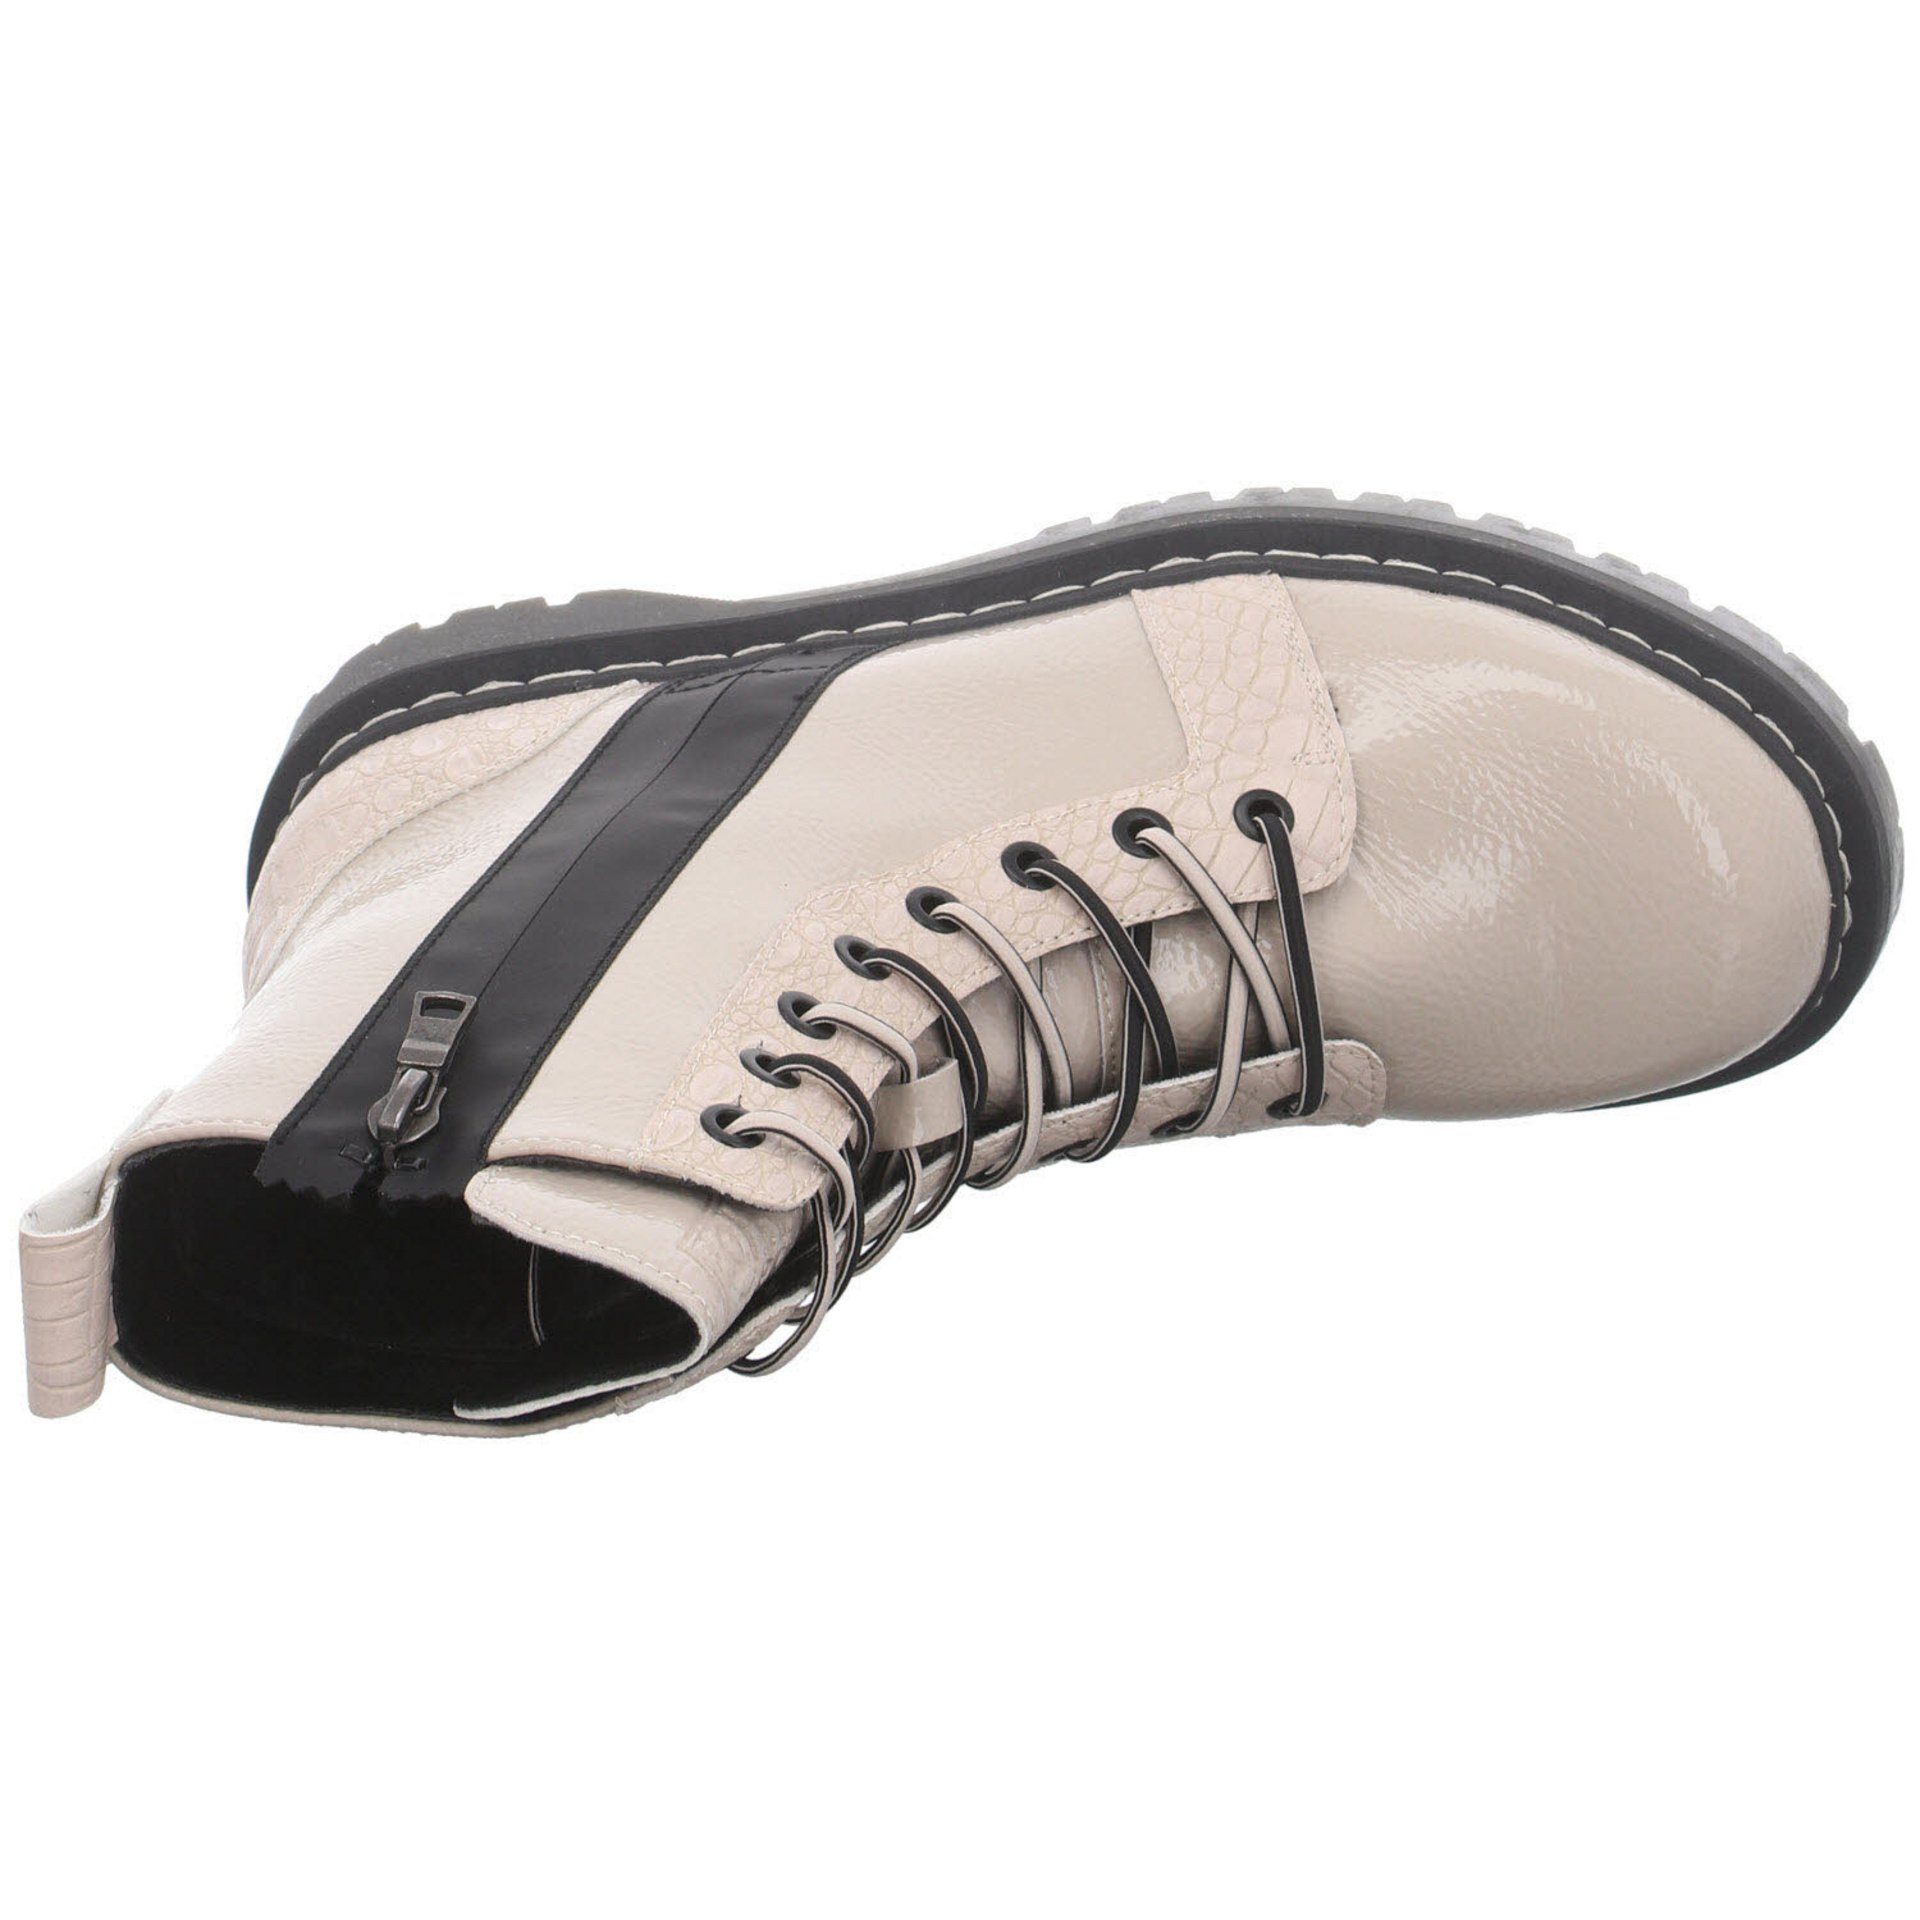 Elegant Schuhe kombi-schwarz bugatti Synthetik Freizeit Big Boots Stiefel beige Damen Stiefel